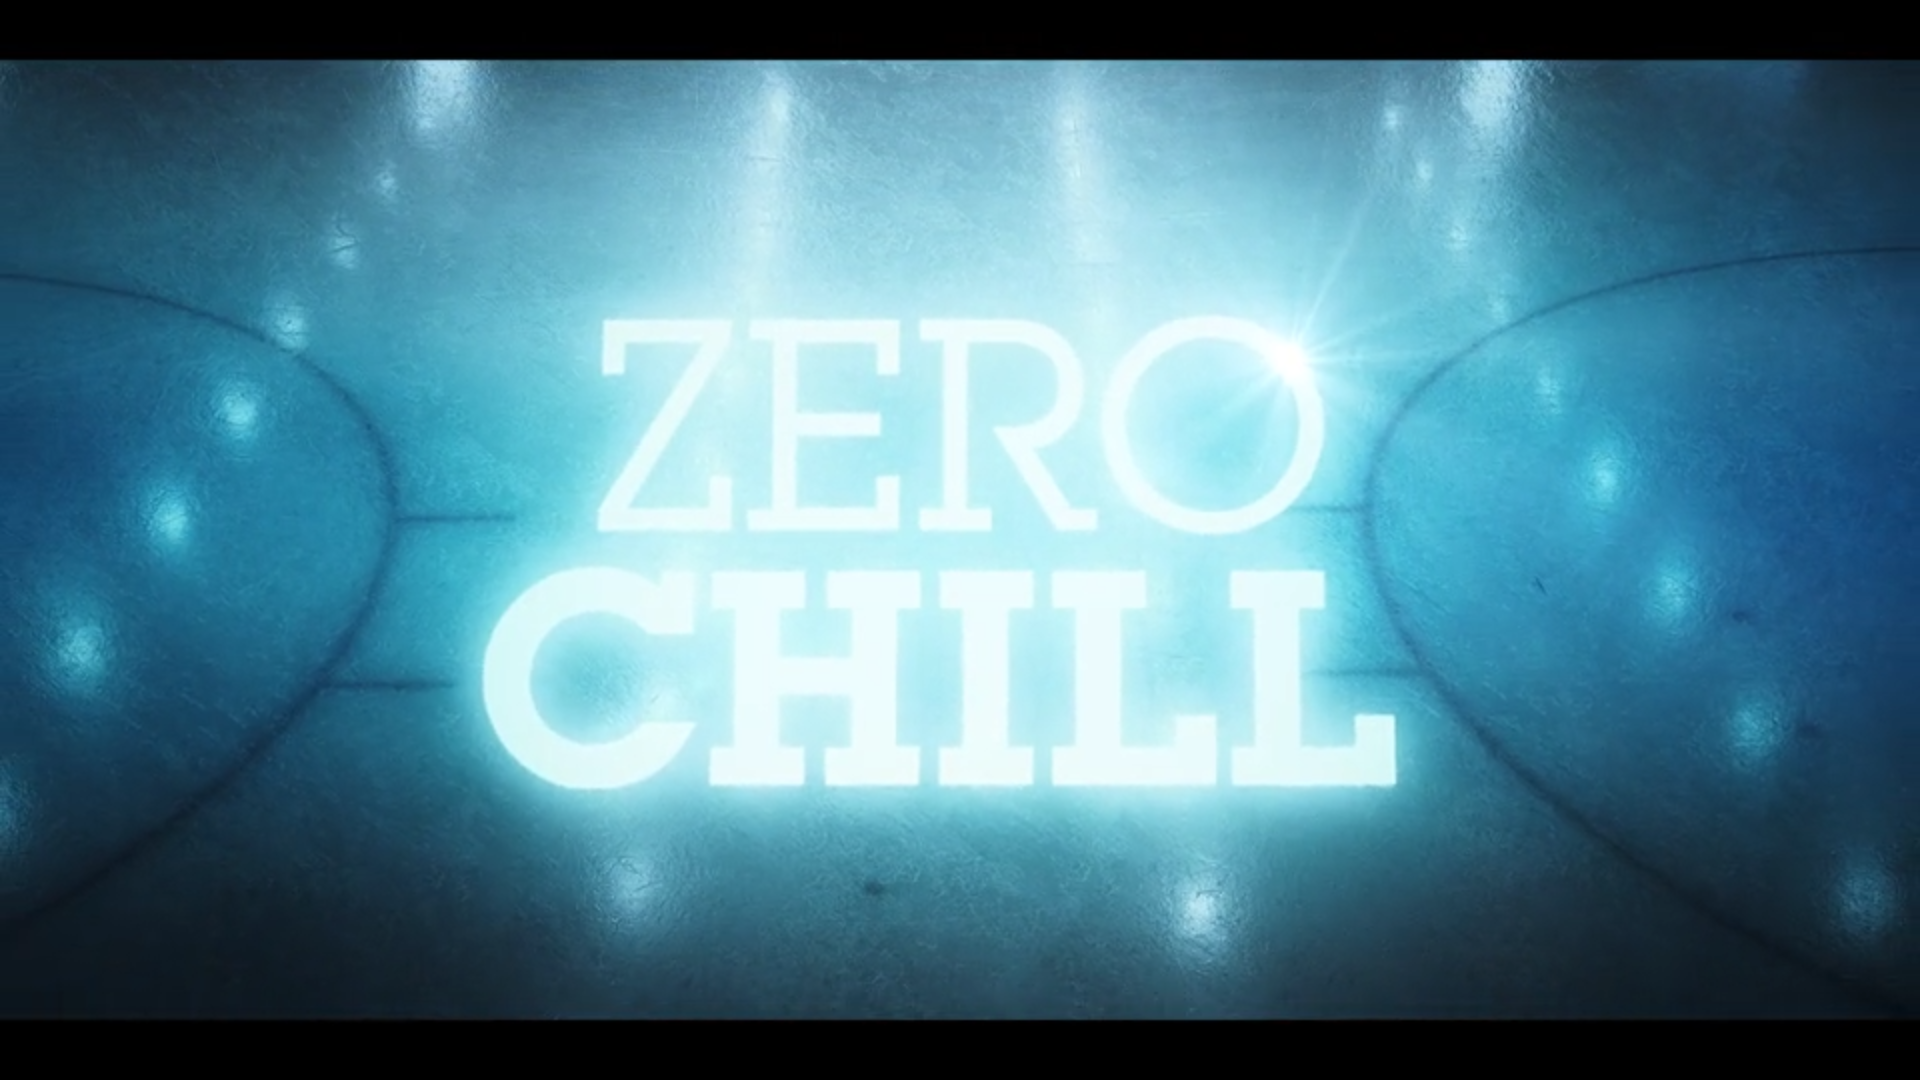 Zero Chill Series. Zero Chill Club. Zero chill